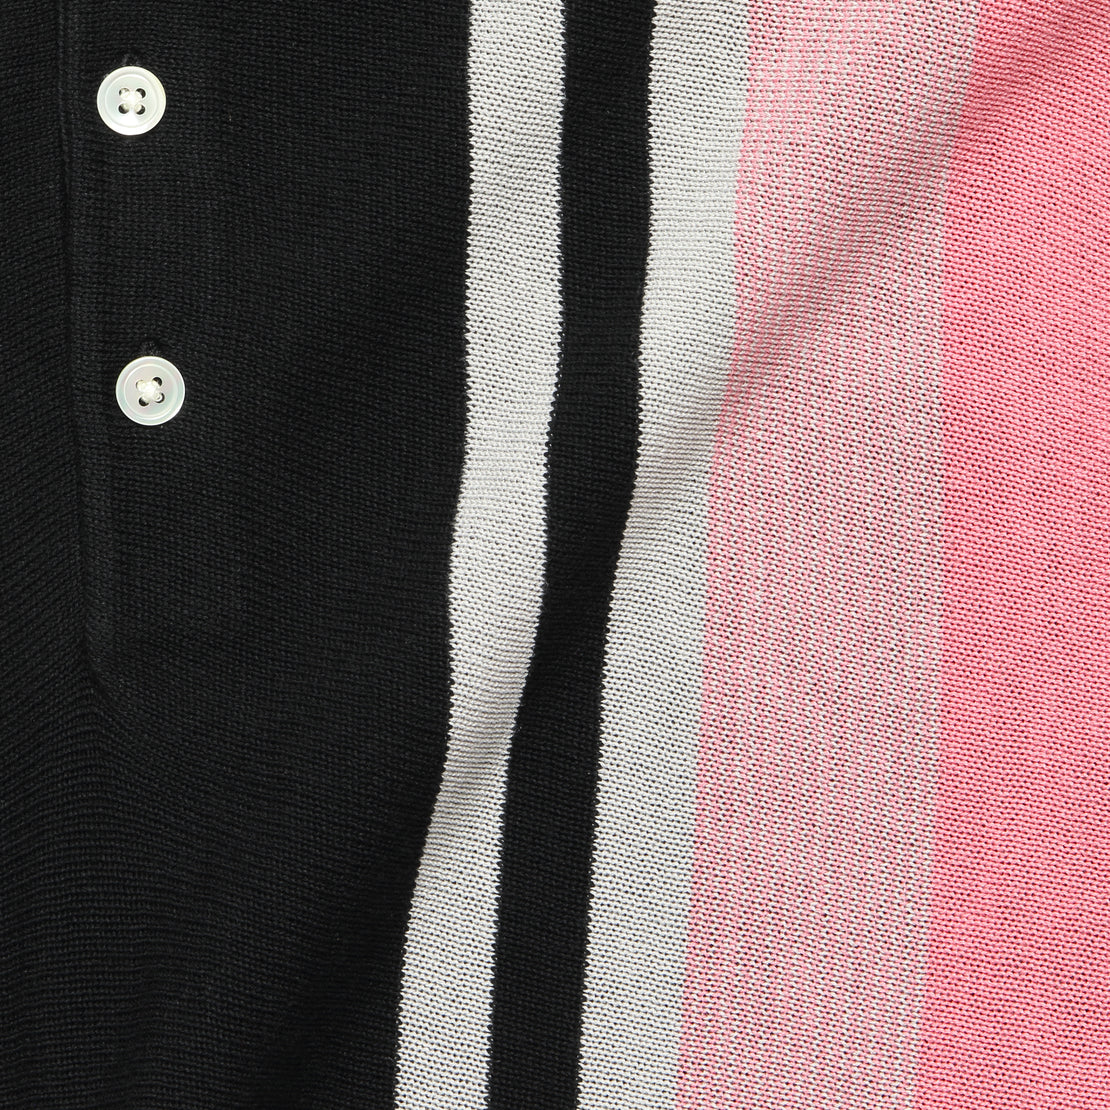 Striped Knit Polo - Black/Pink/White